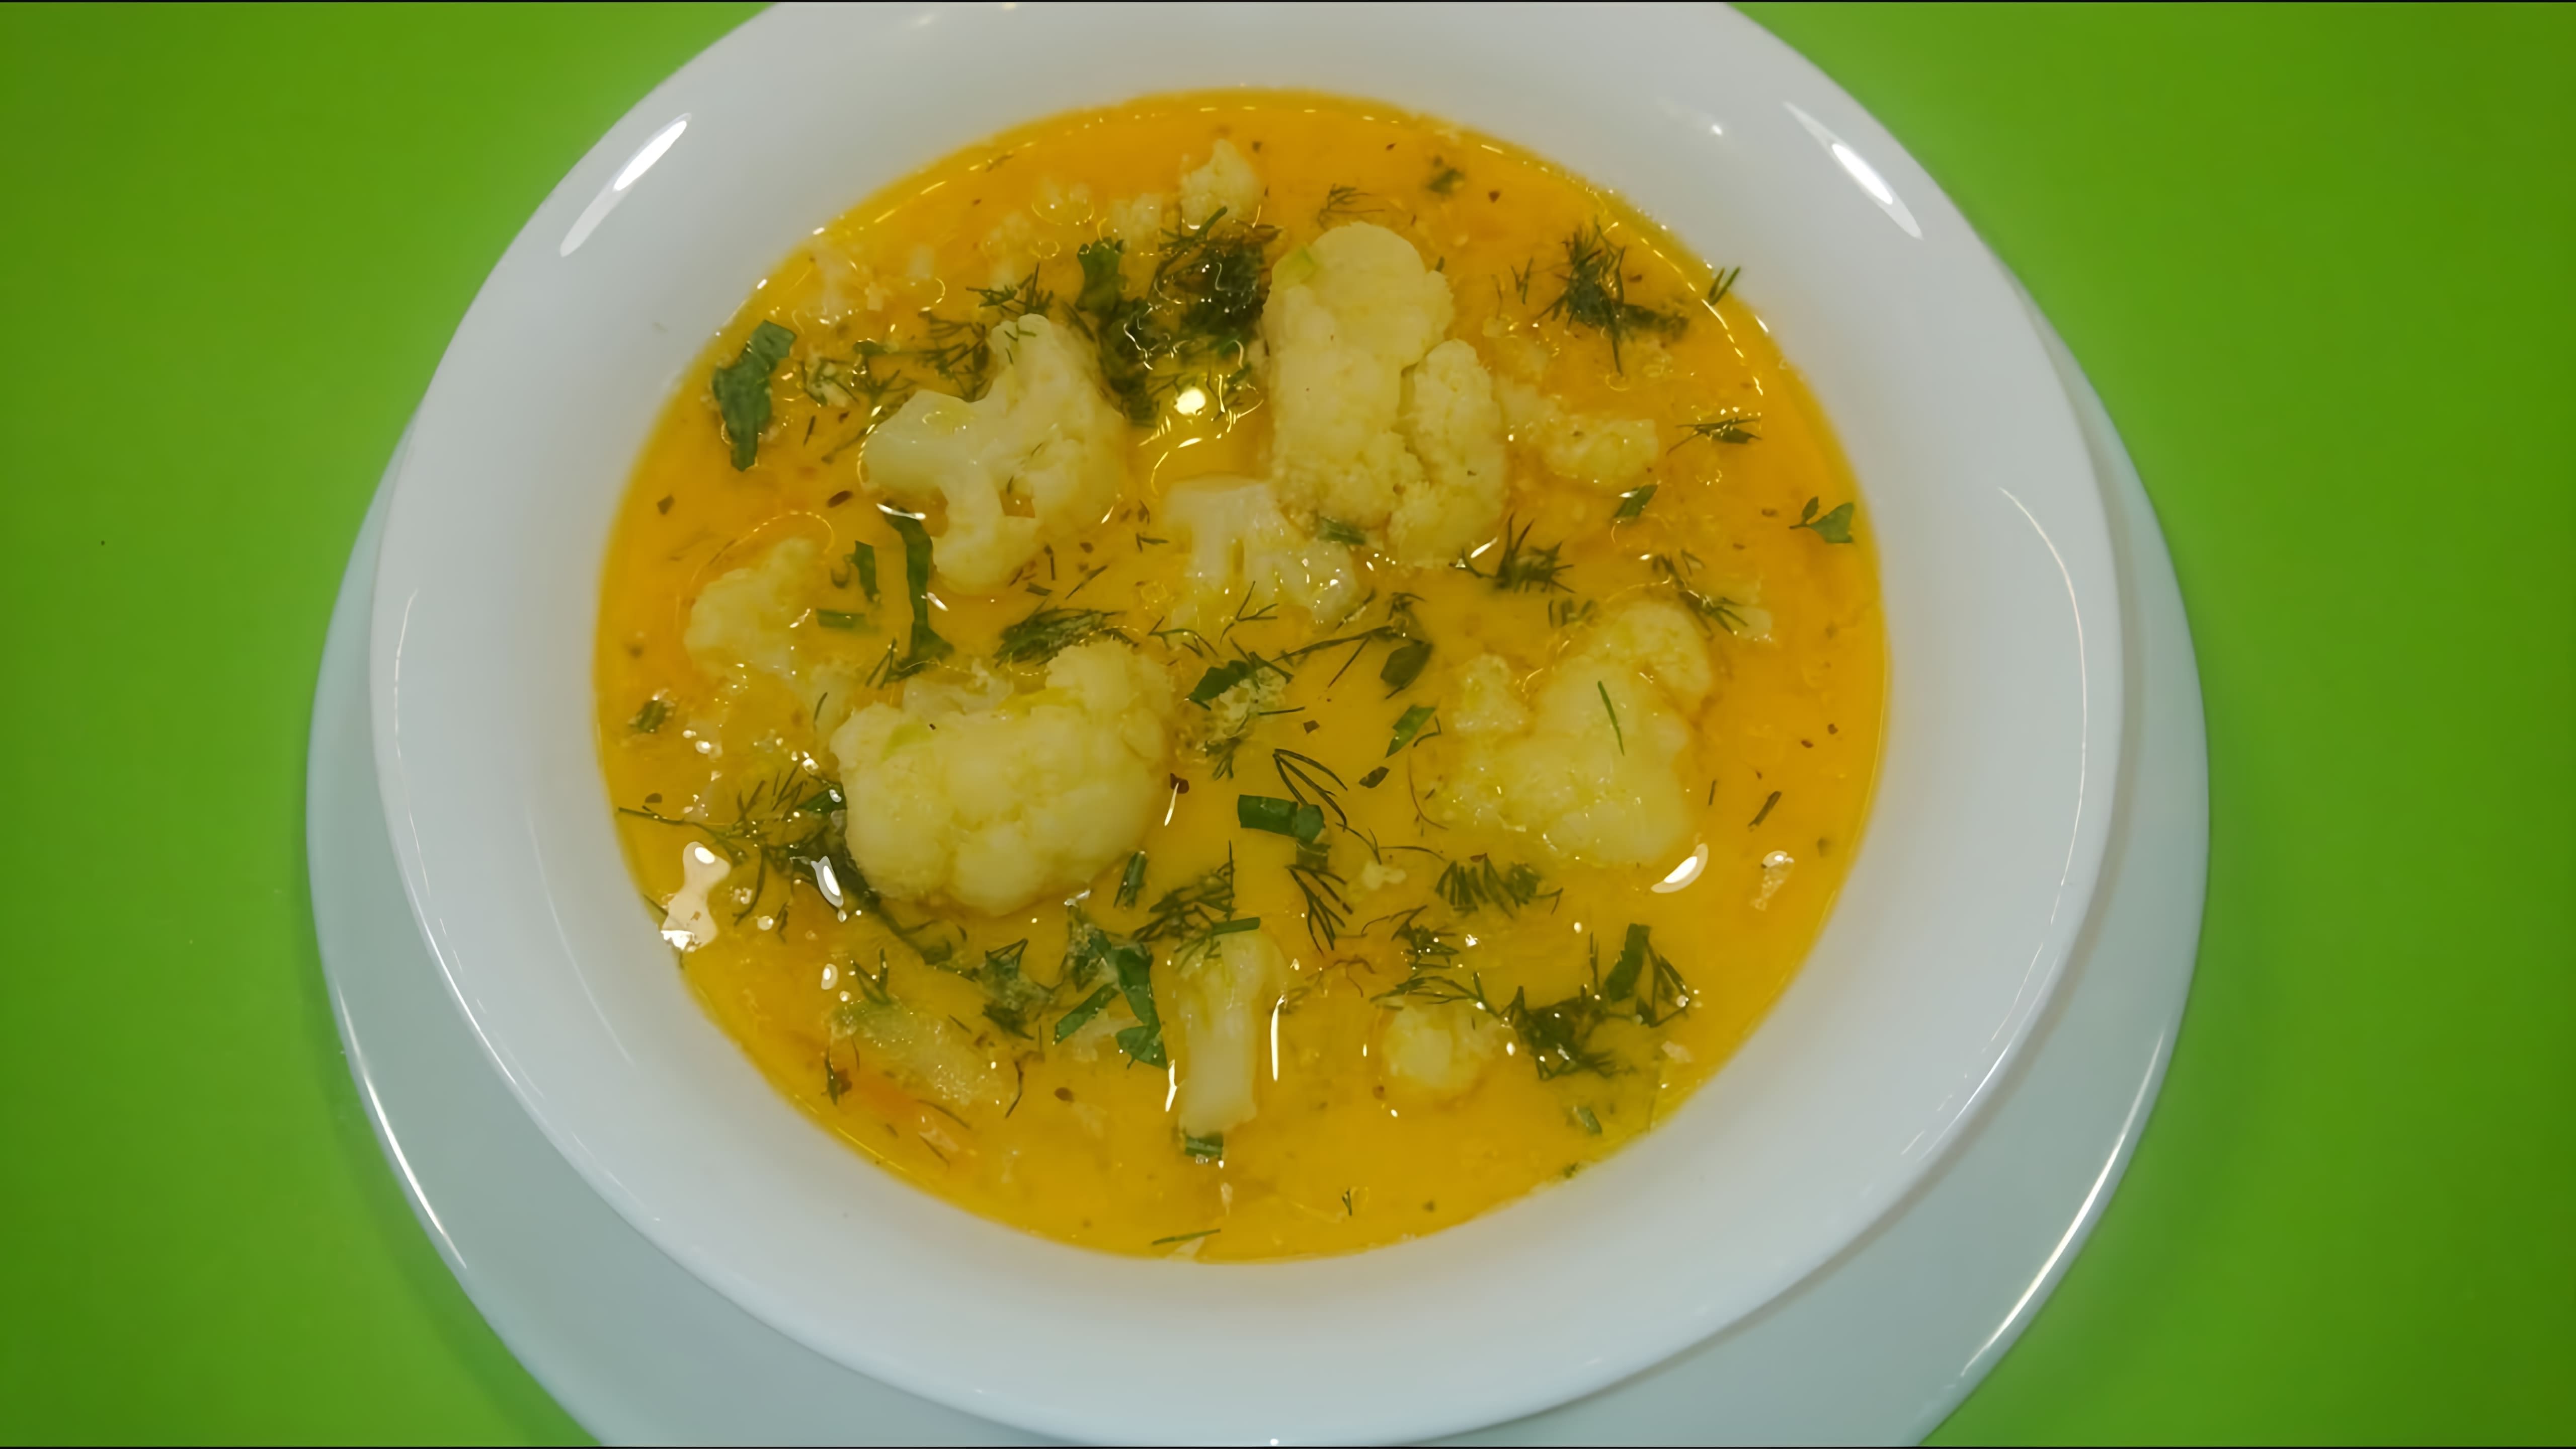 В этом видео демонстрируется процесс приготовления вкусного овощного супа с цветной капустой, кабачком, плавленым сыром и кокосовыми сливками